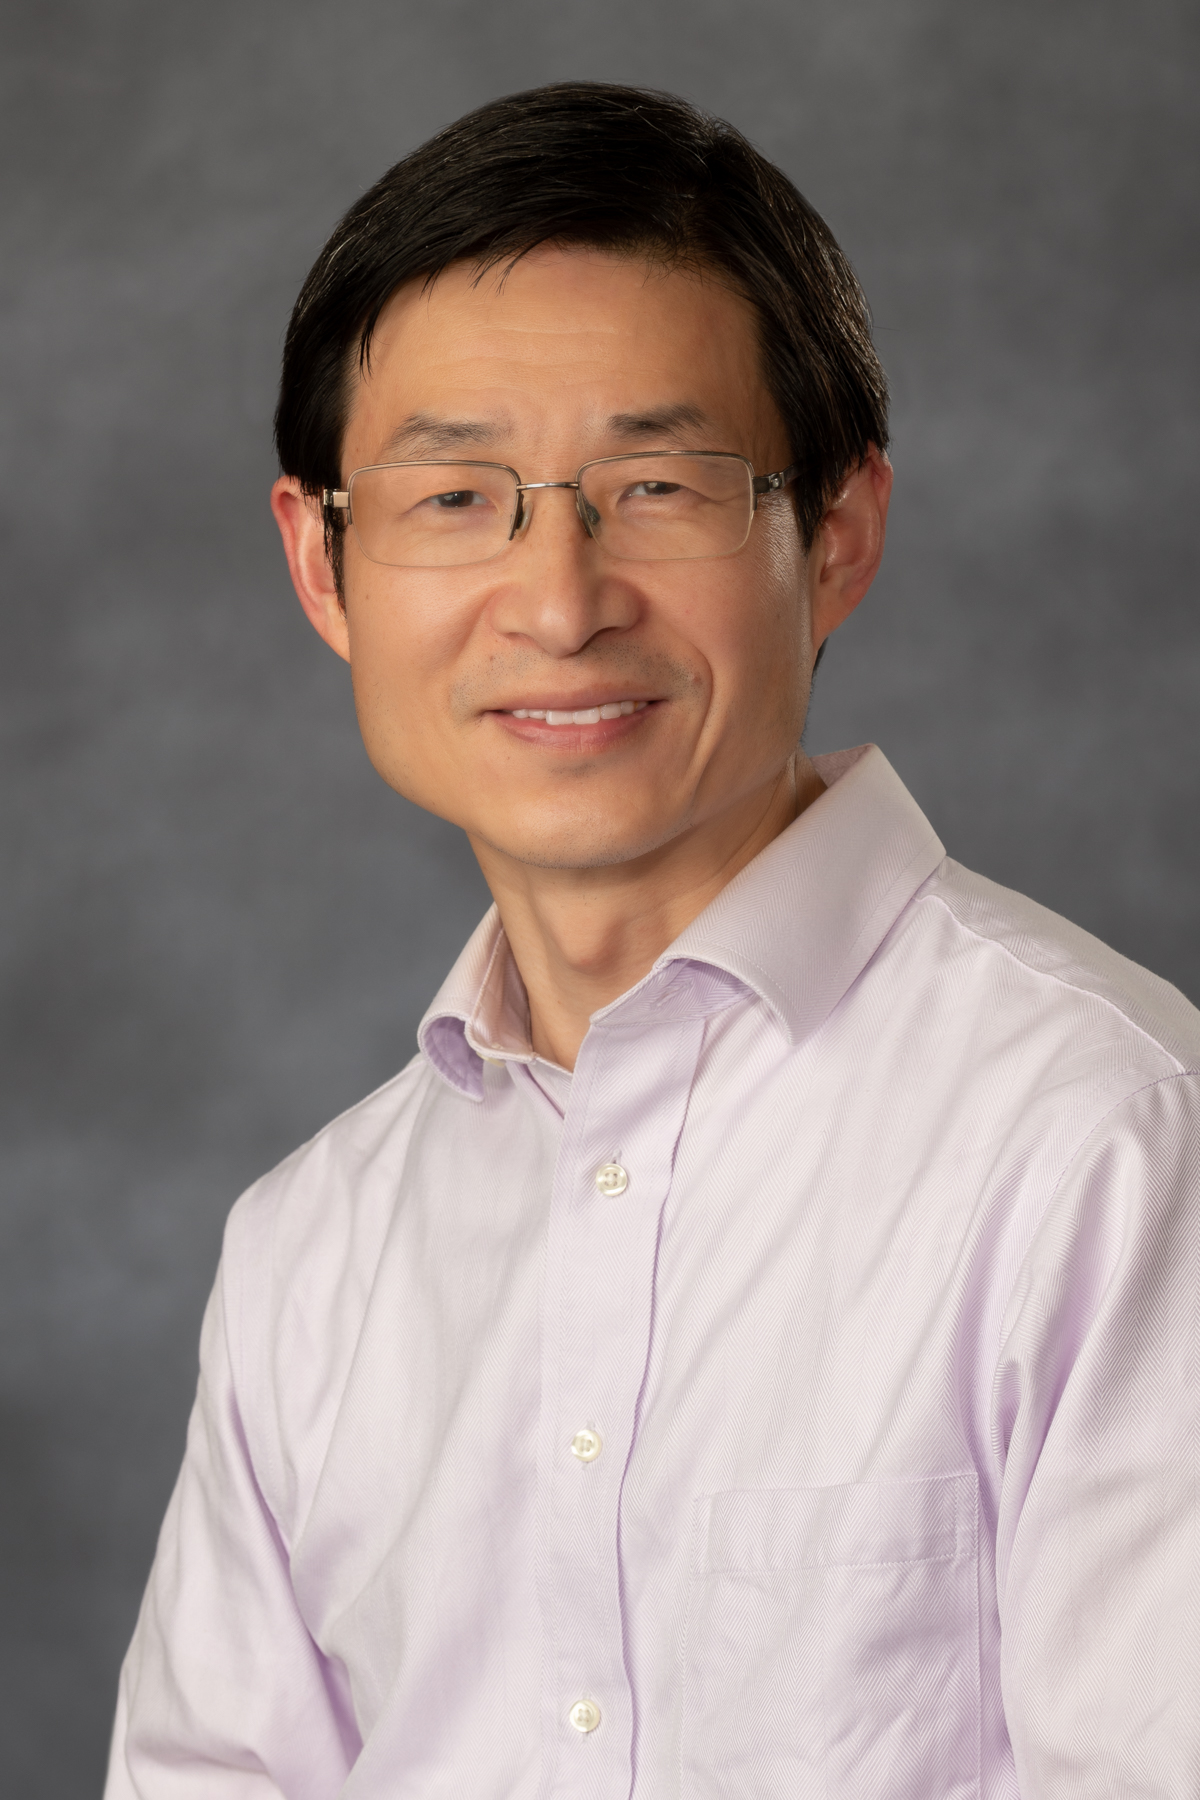 Lulin Yuan, Ph.D.